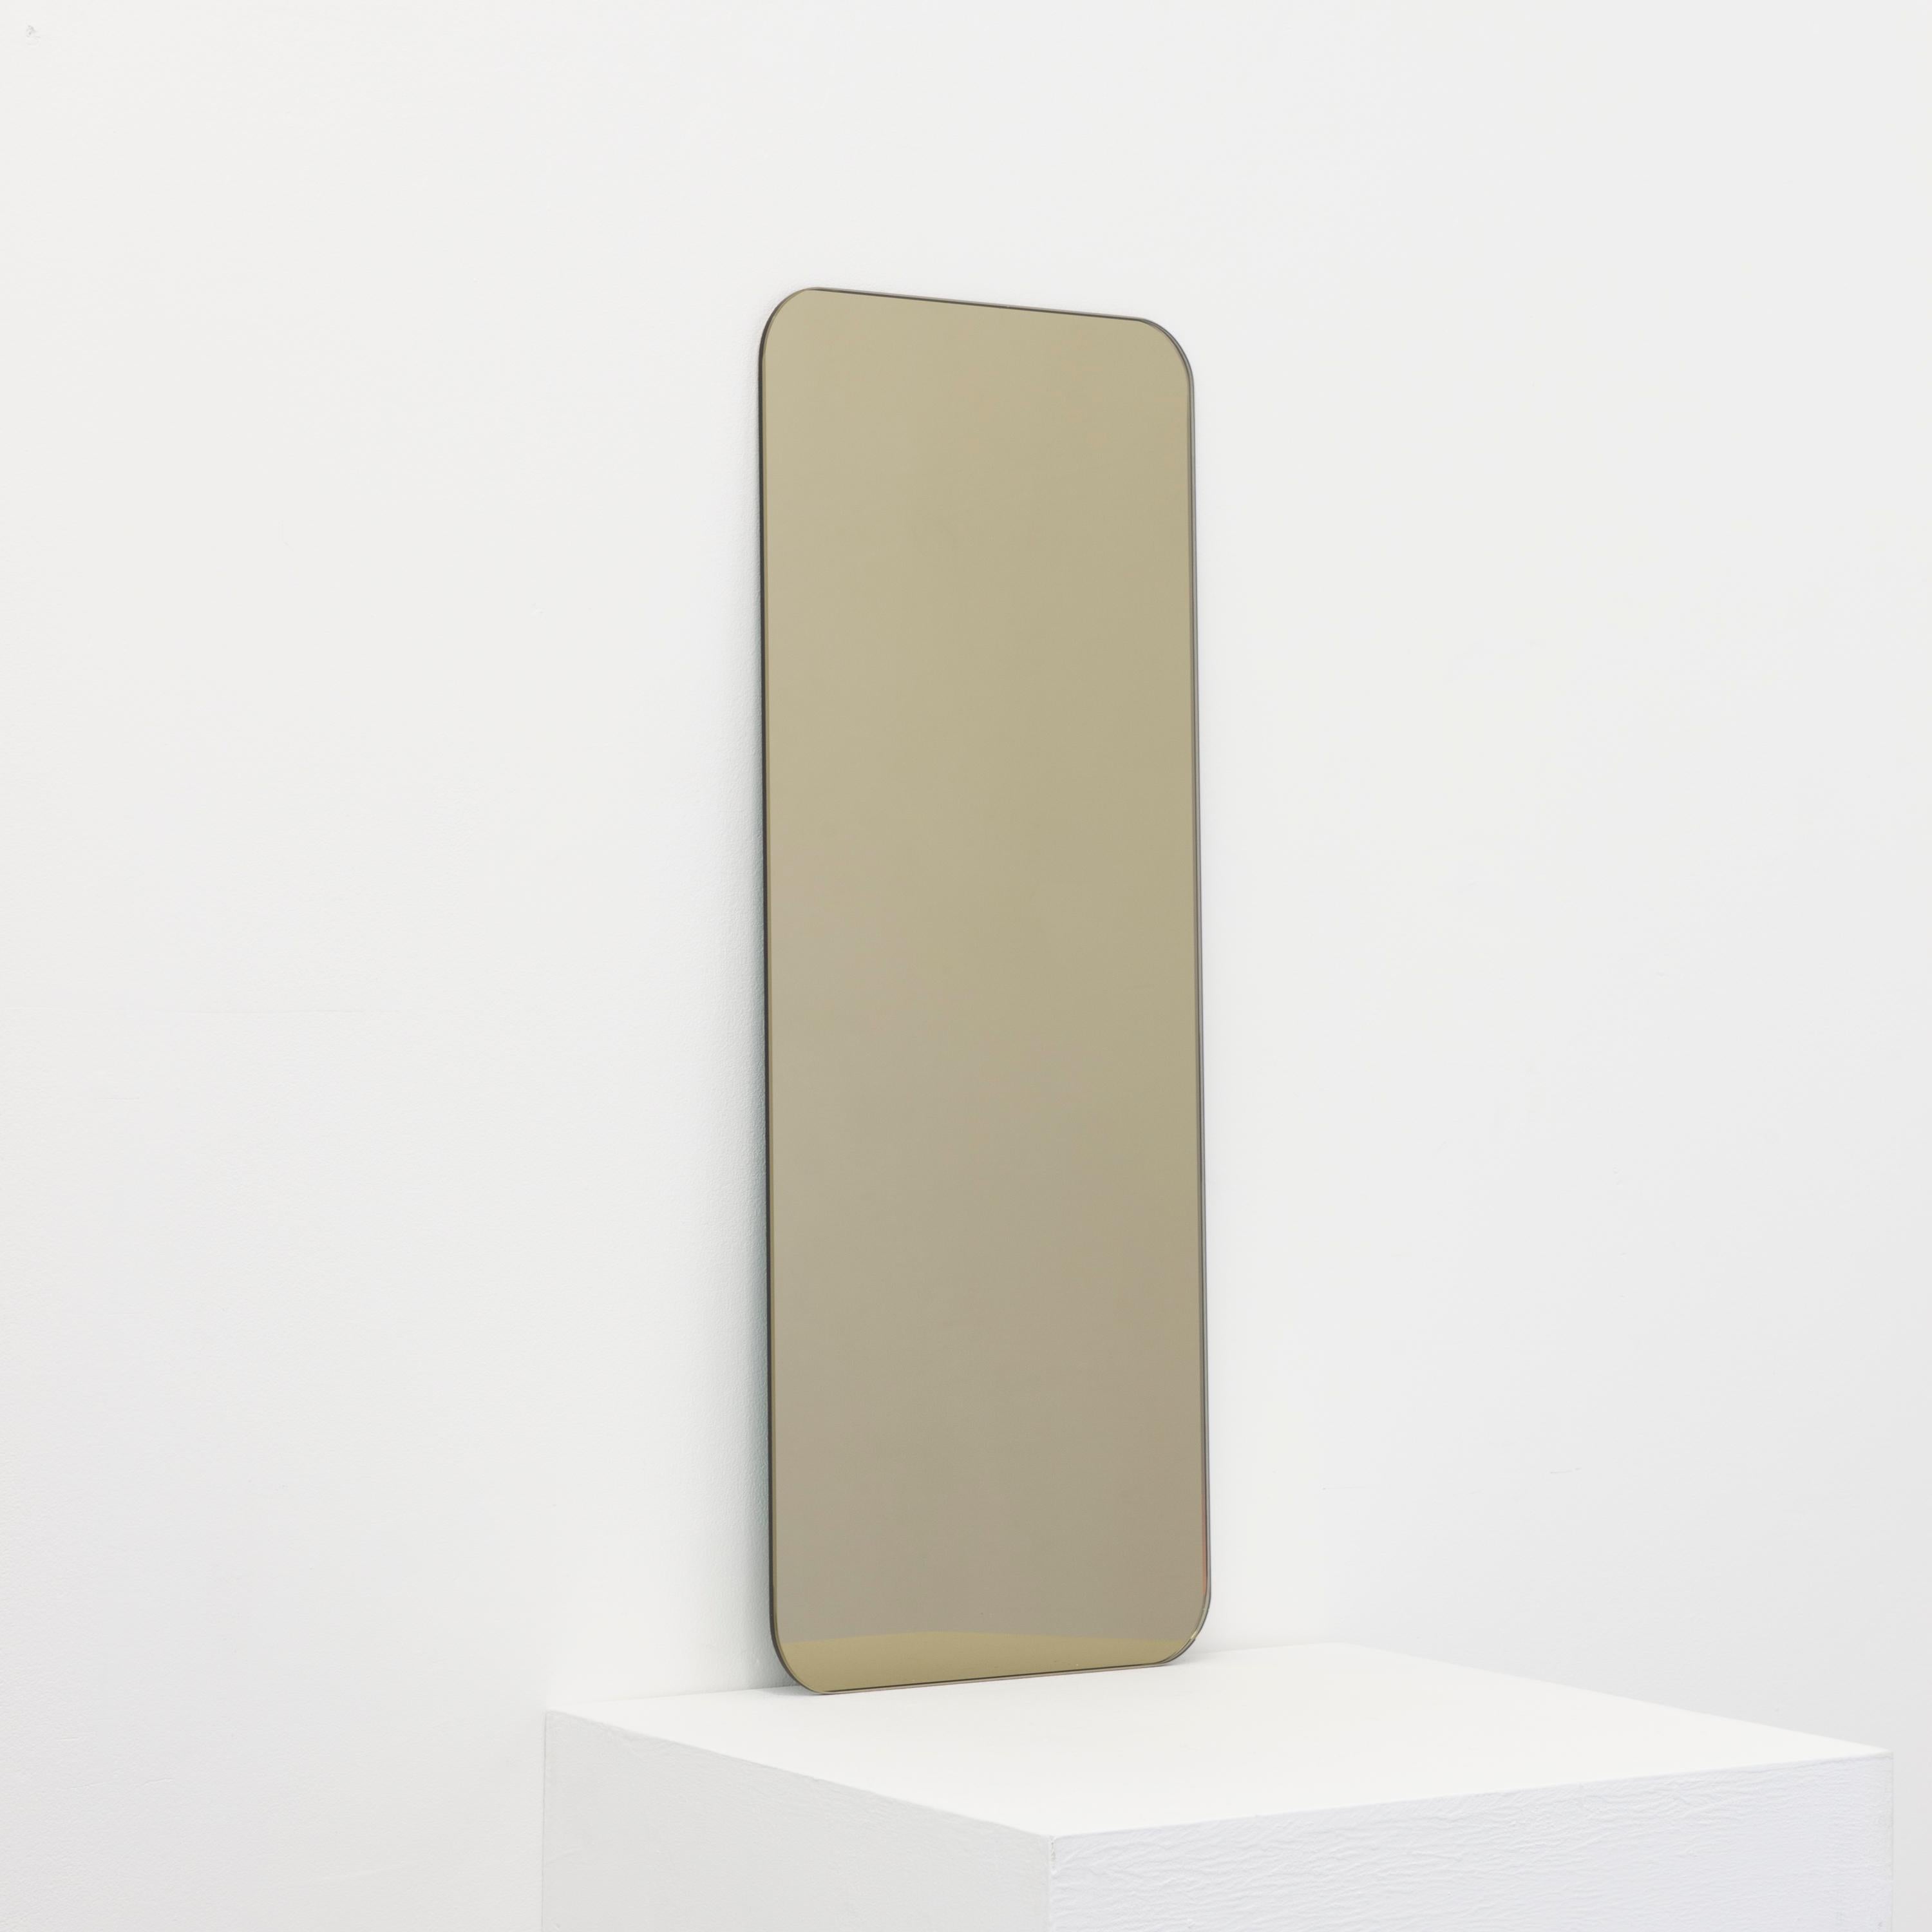 Minimalistischer Quadris™ rechteckiger, rahmenloser, bronzefarben getönter Spiegel mit Schwebeeffekt. Hochwertiges Design, das dafür sorgt, dass der Spiegel perfekt parallel zur Wand steht. Entworfen und hergestellt in London, UK.

Ausgestattet mit